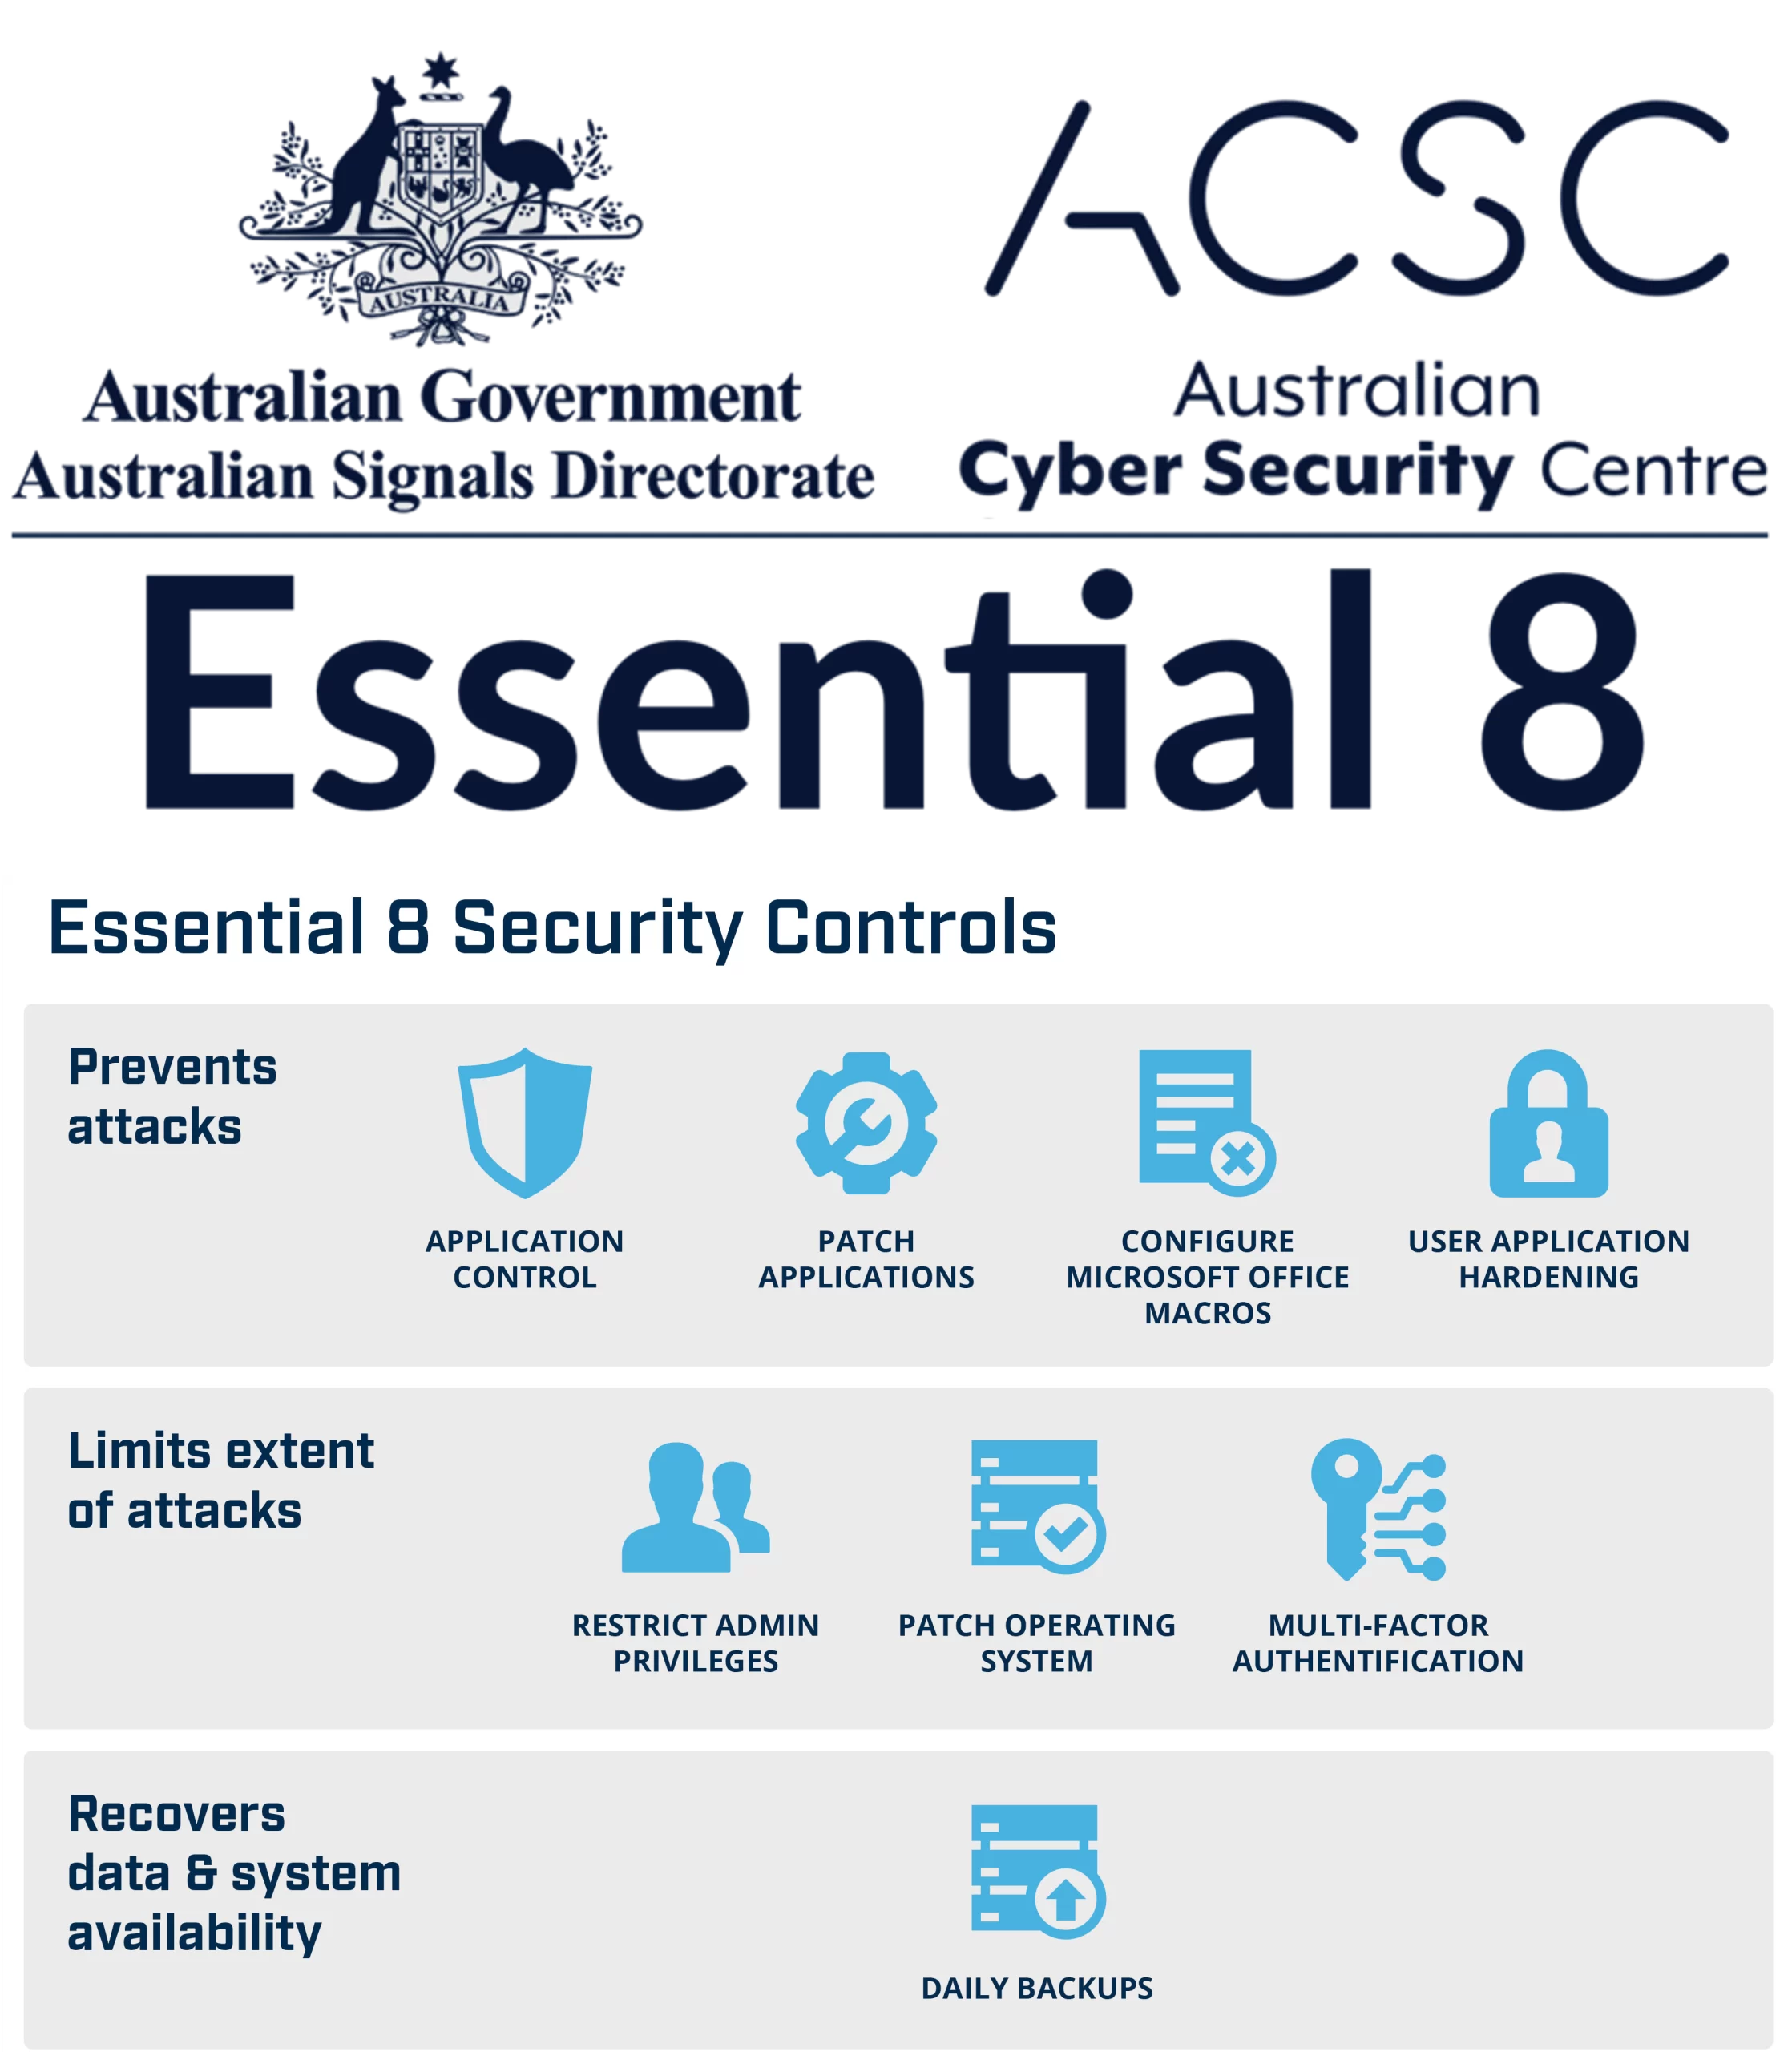 ACSC Essential 8